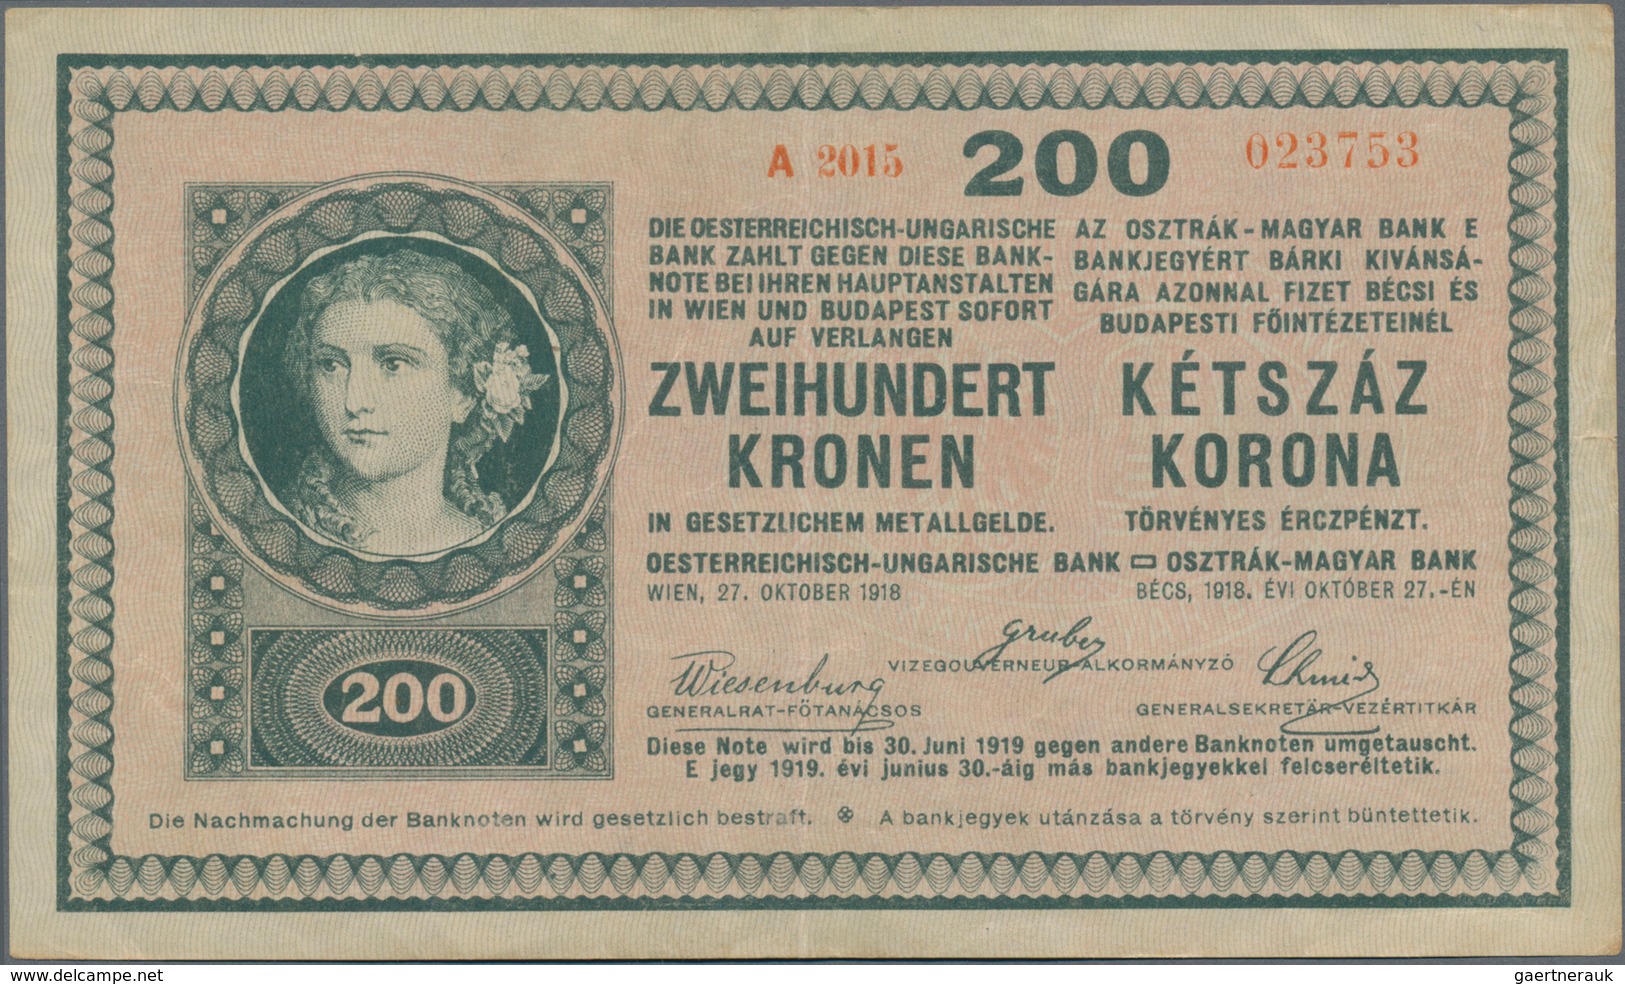 Hungary / Ungarn: Osztrák-Magyar Bank / Oesterreichisch-Ungarische Bank, set with 13 banknotes compr